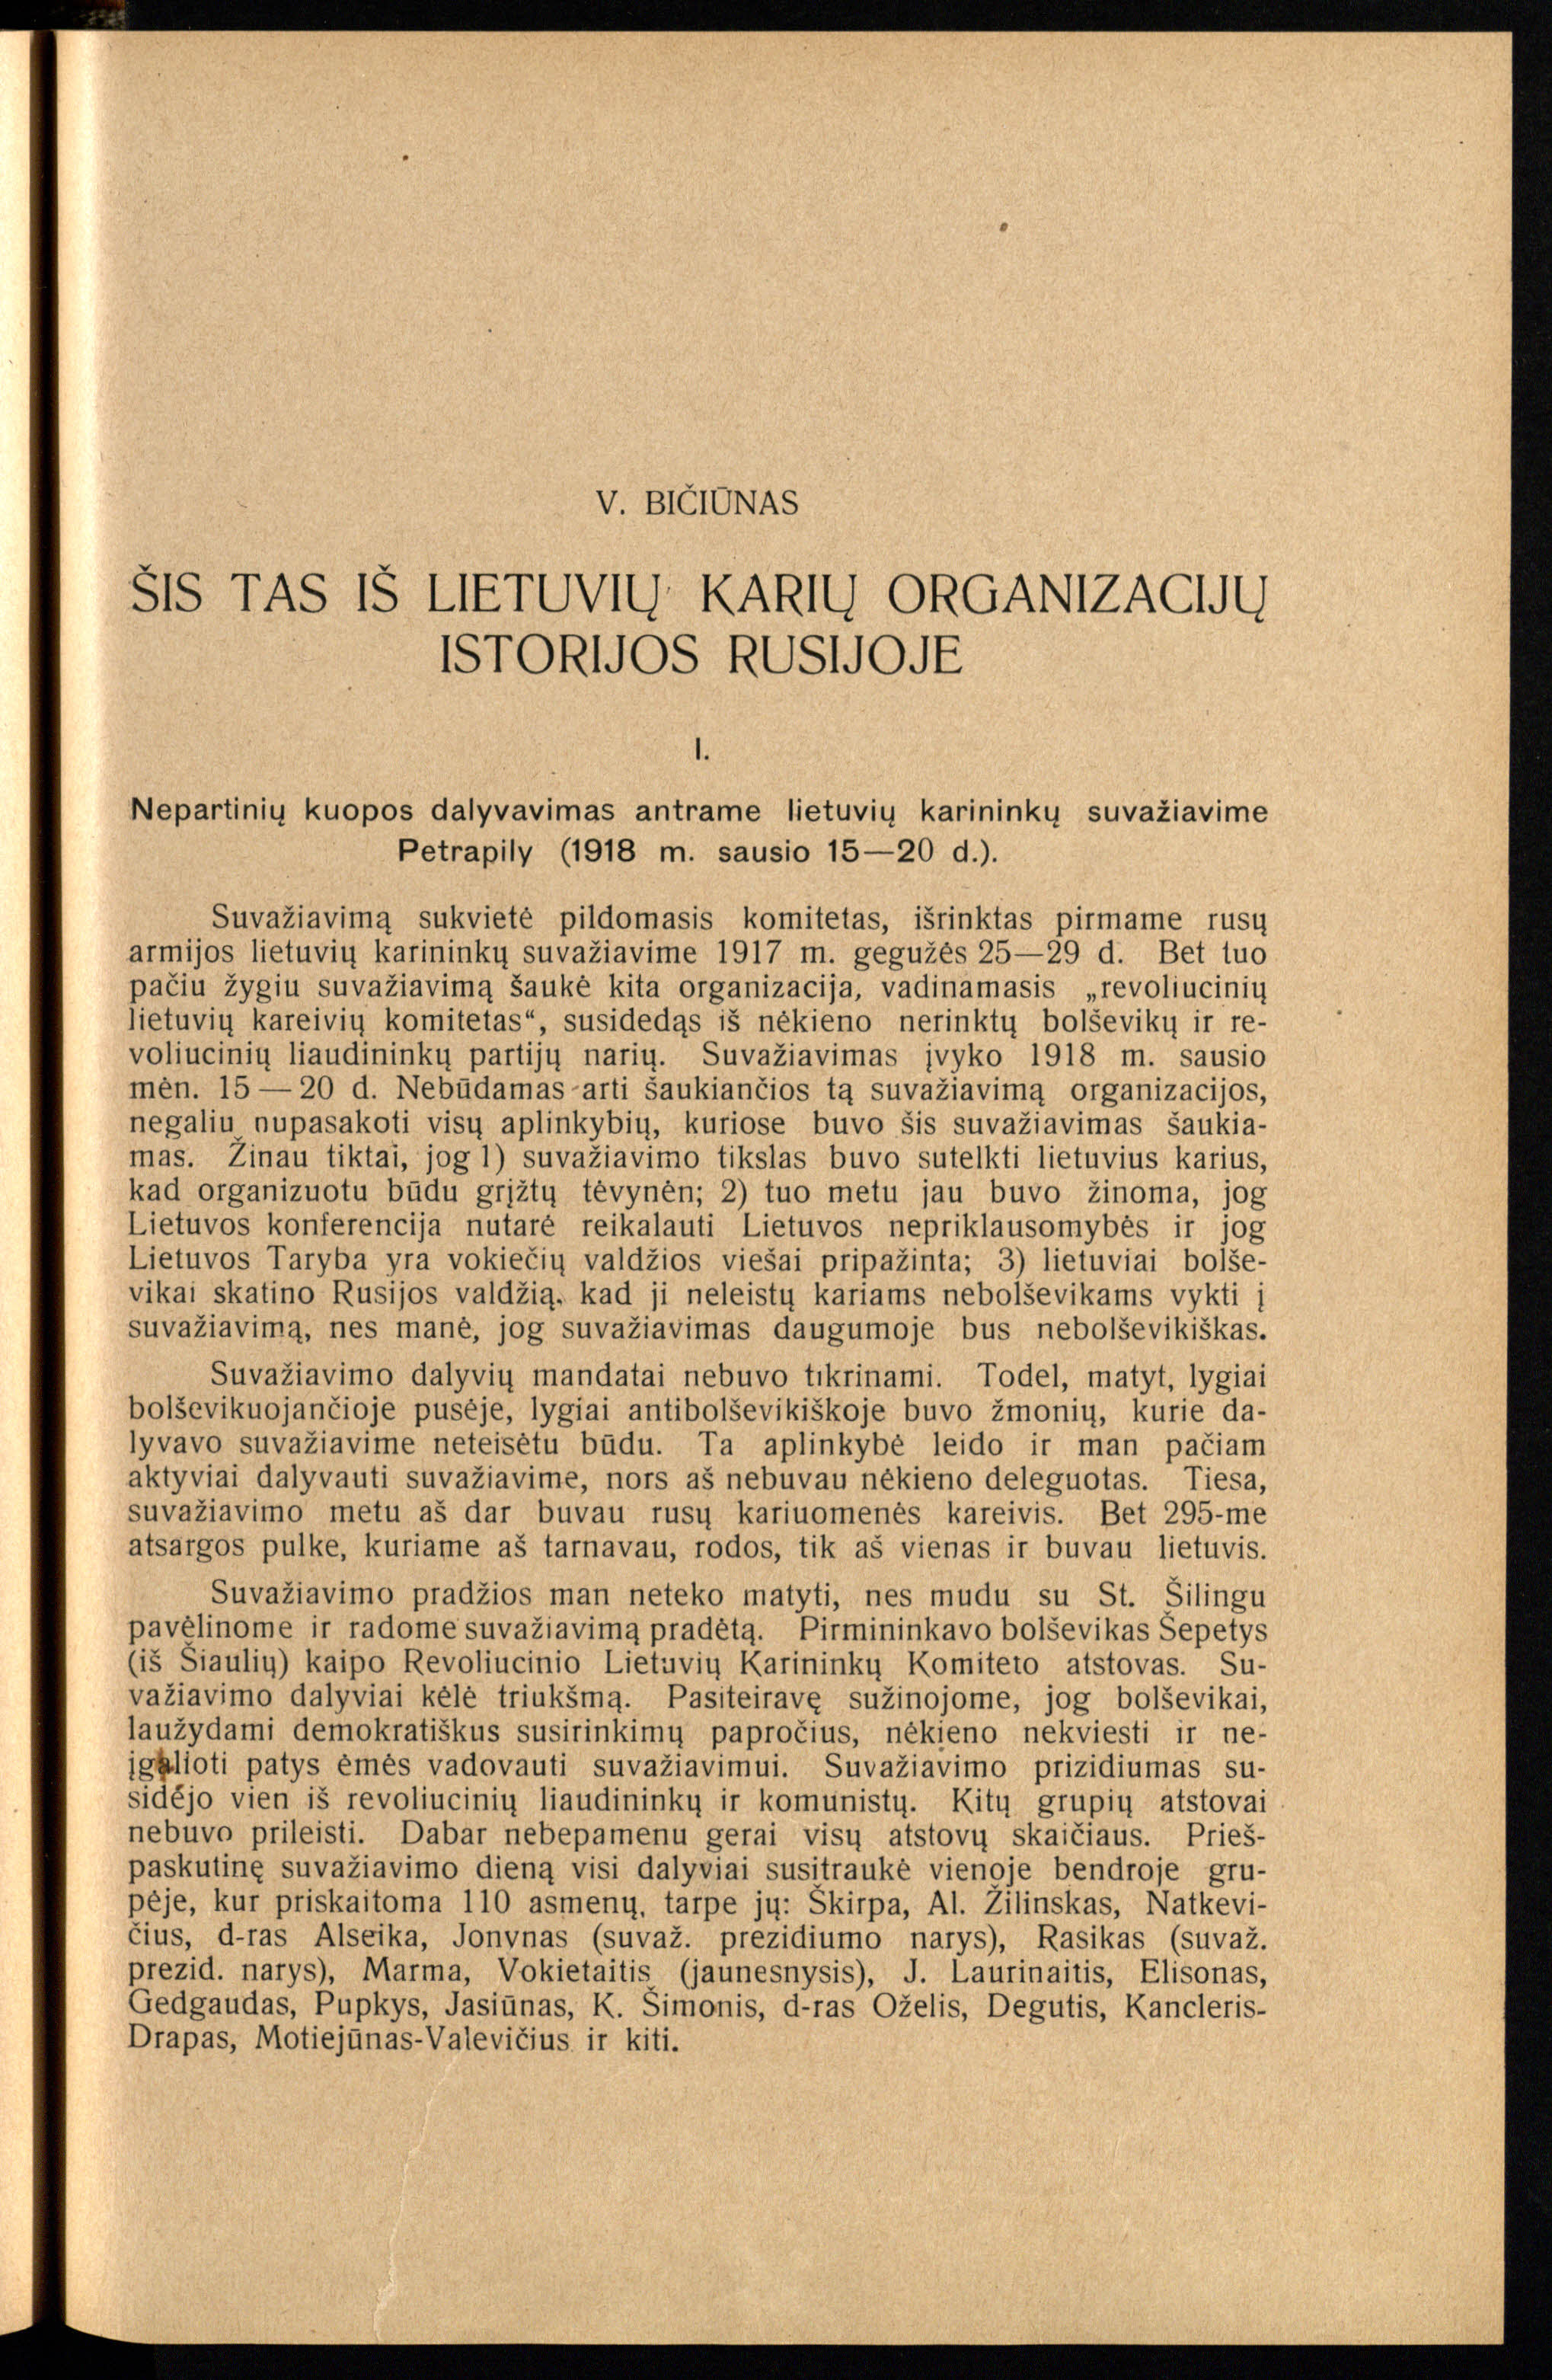 Aprašomas lietuvių karių antrasis suvažiavimas Rusijoje, įvykęs 1918 m. sausio 15–20 d.